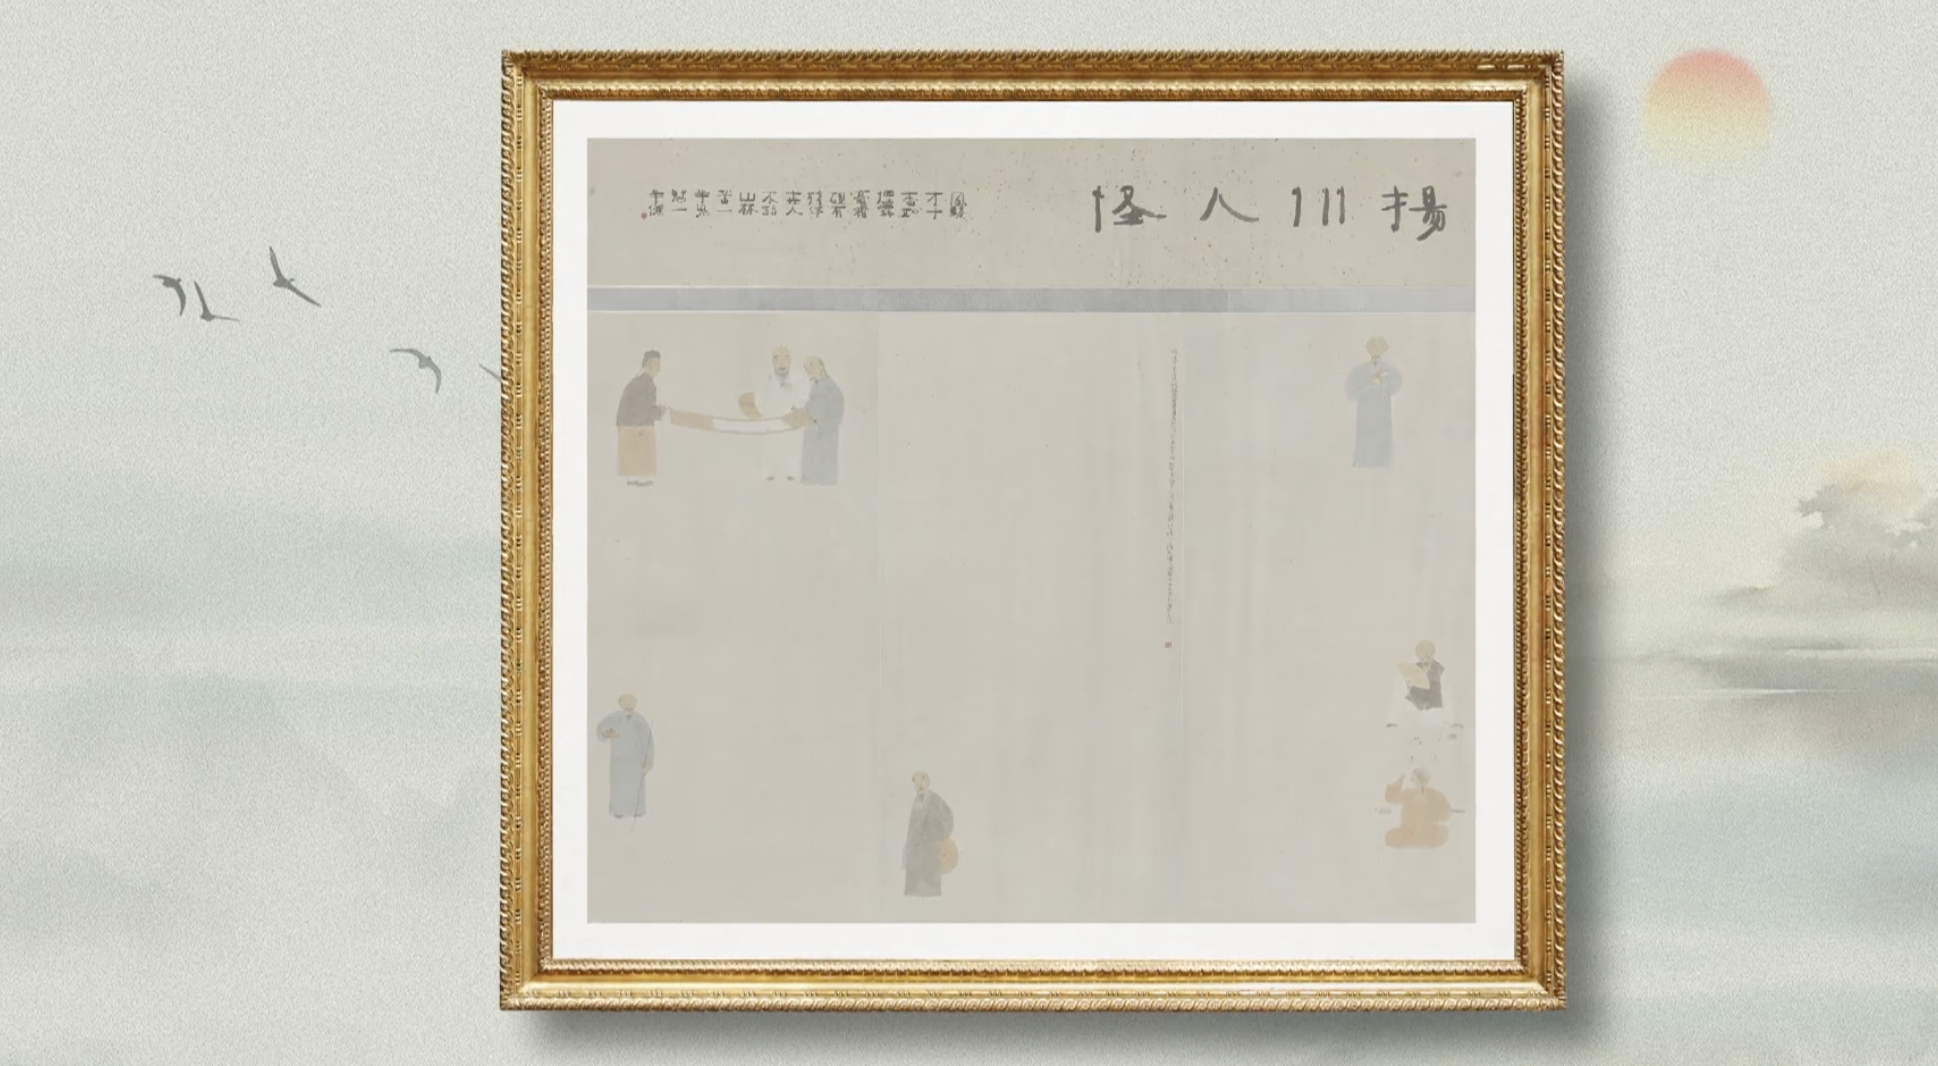 Zhou Jingxin's painting 